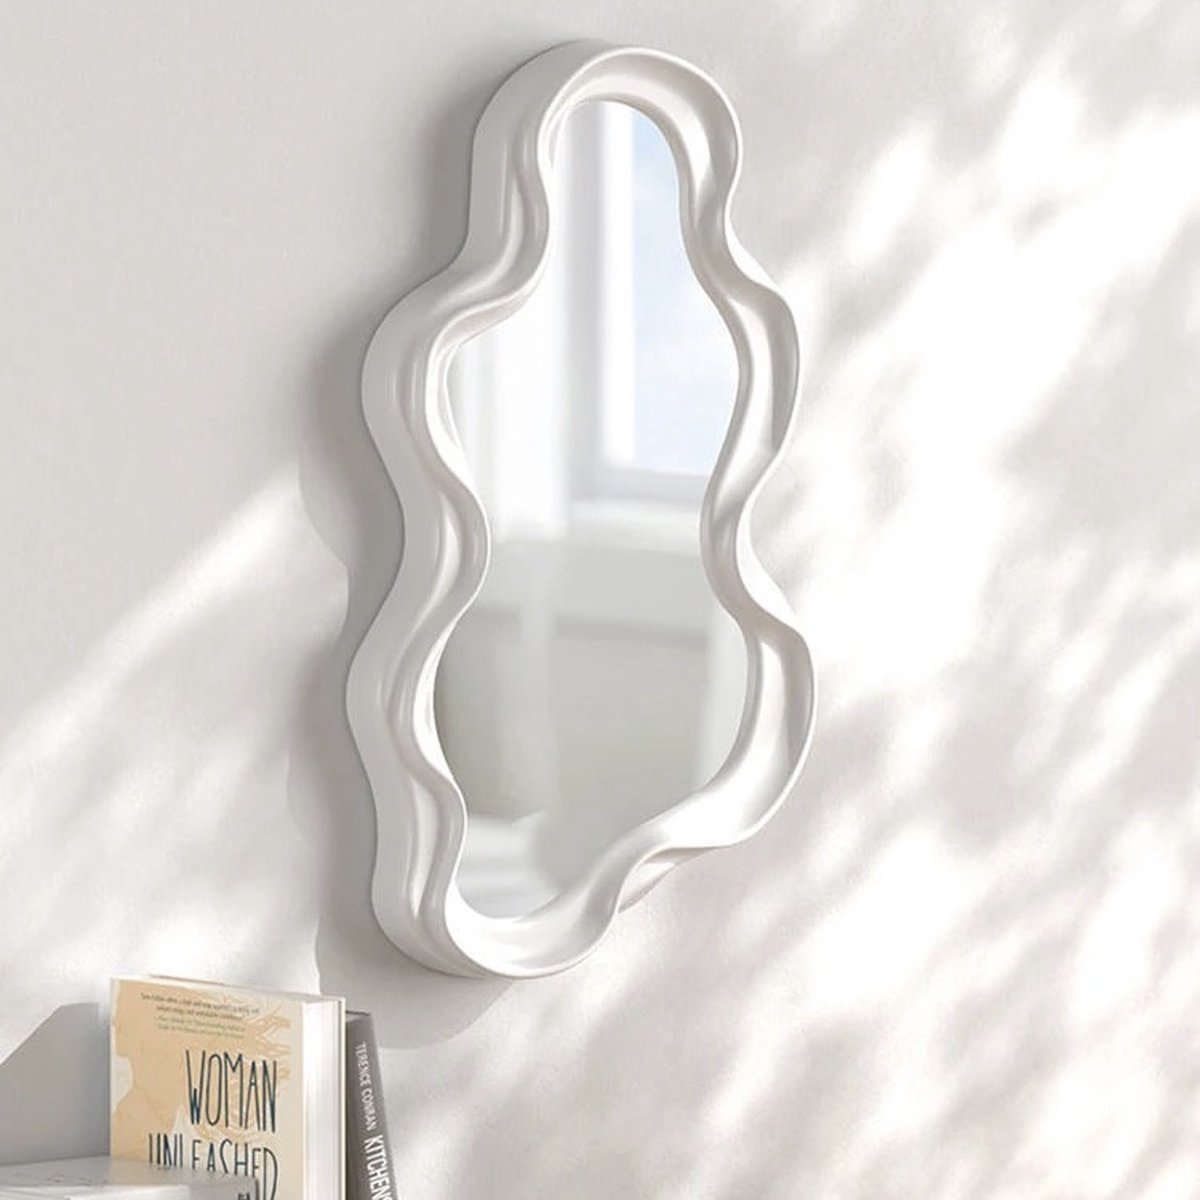 Ovale spiegel